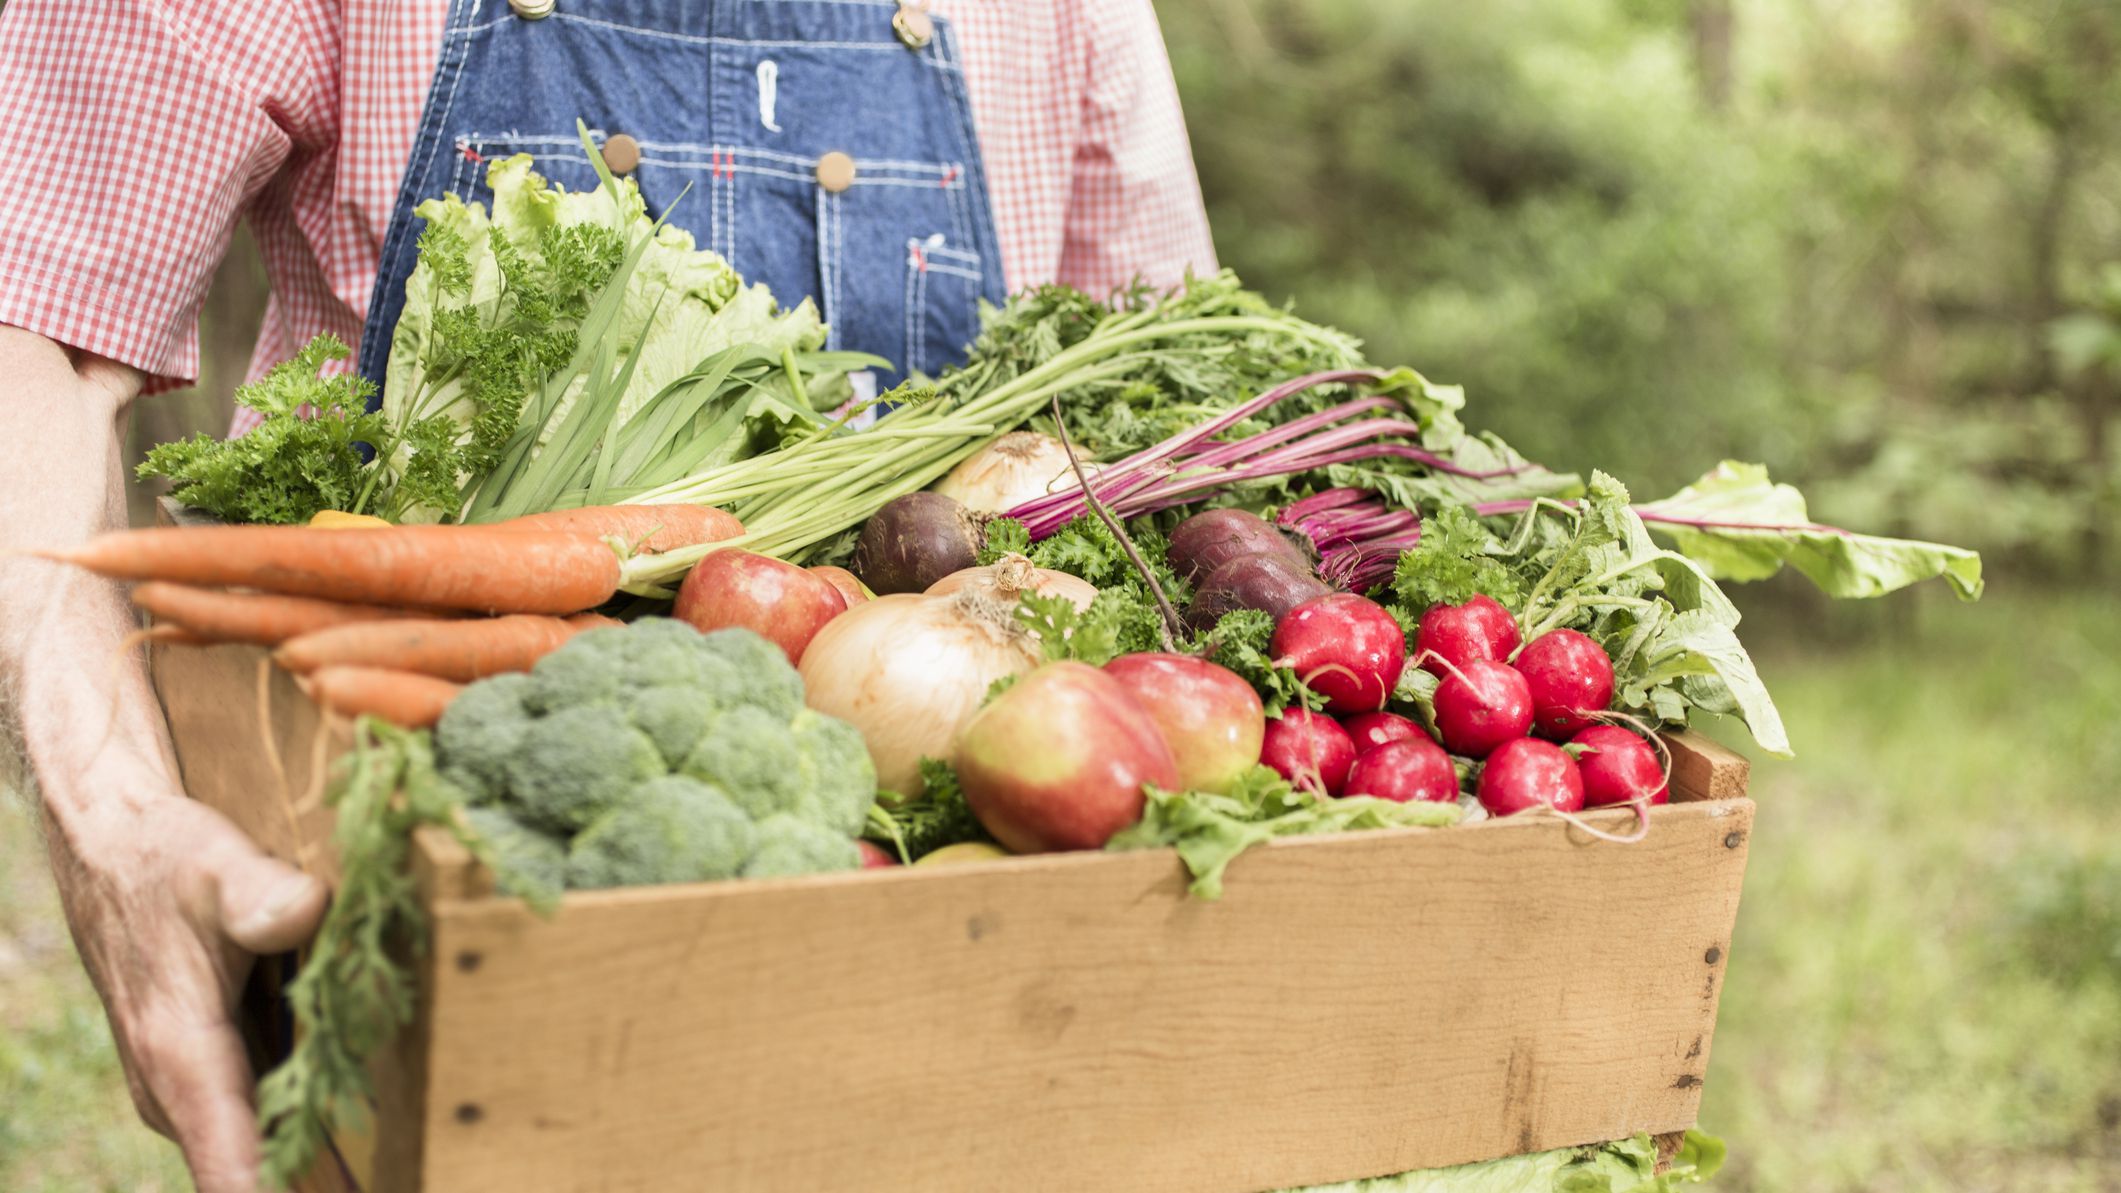 Organic farming - Consumer Health Photo